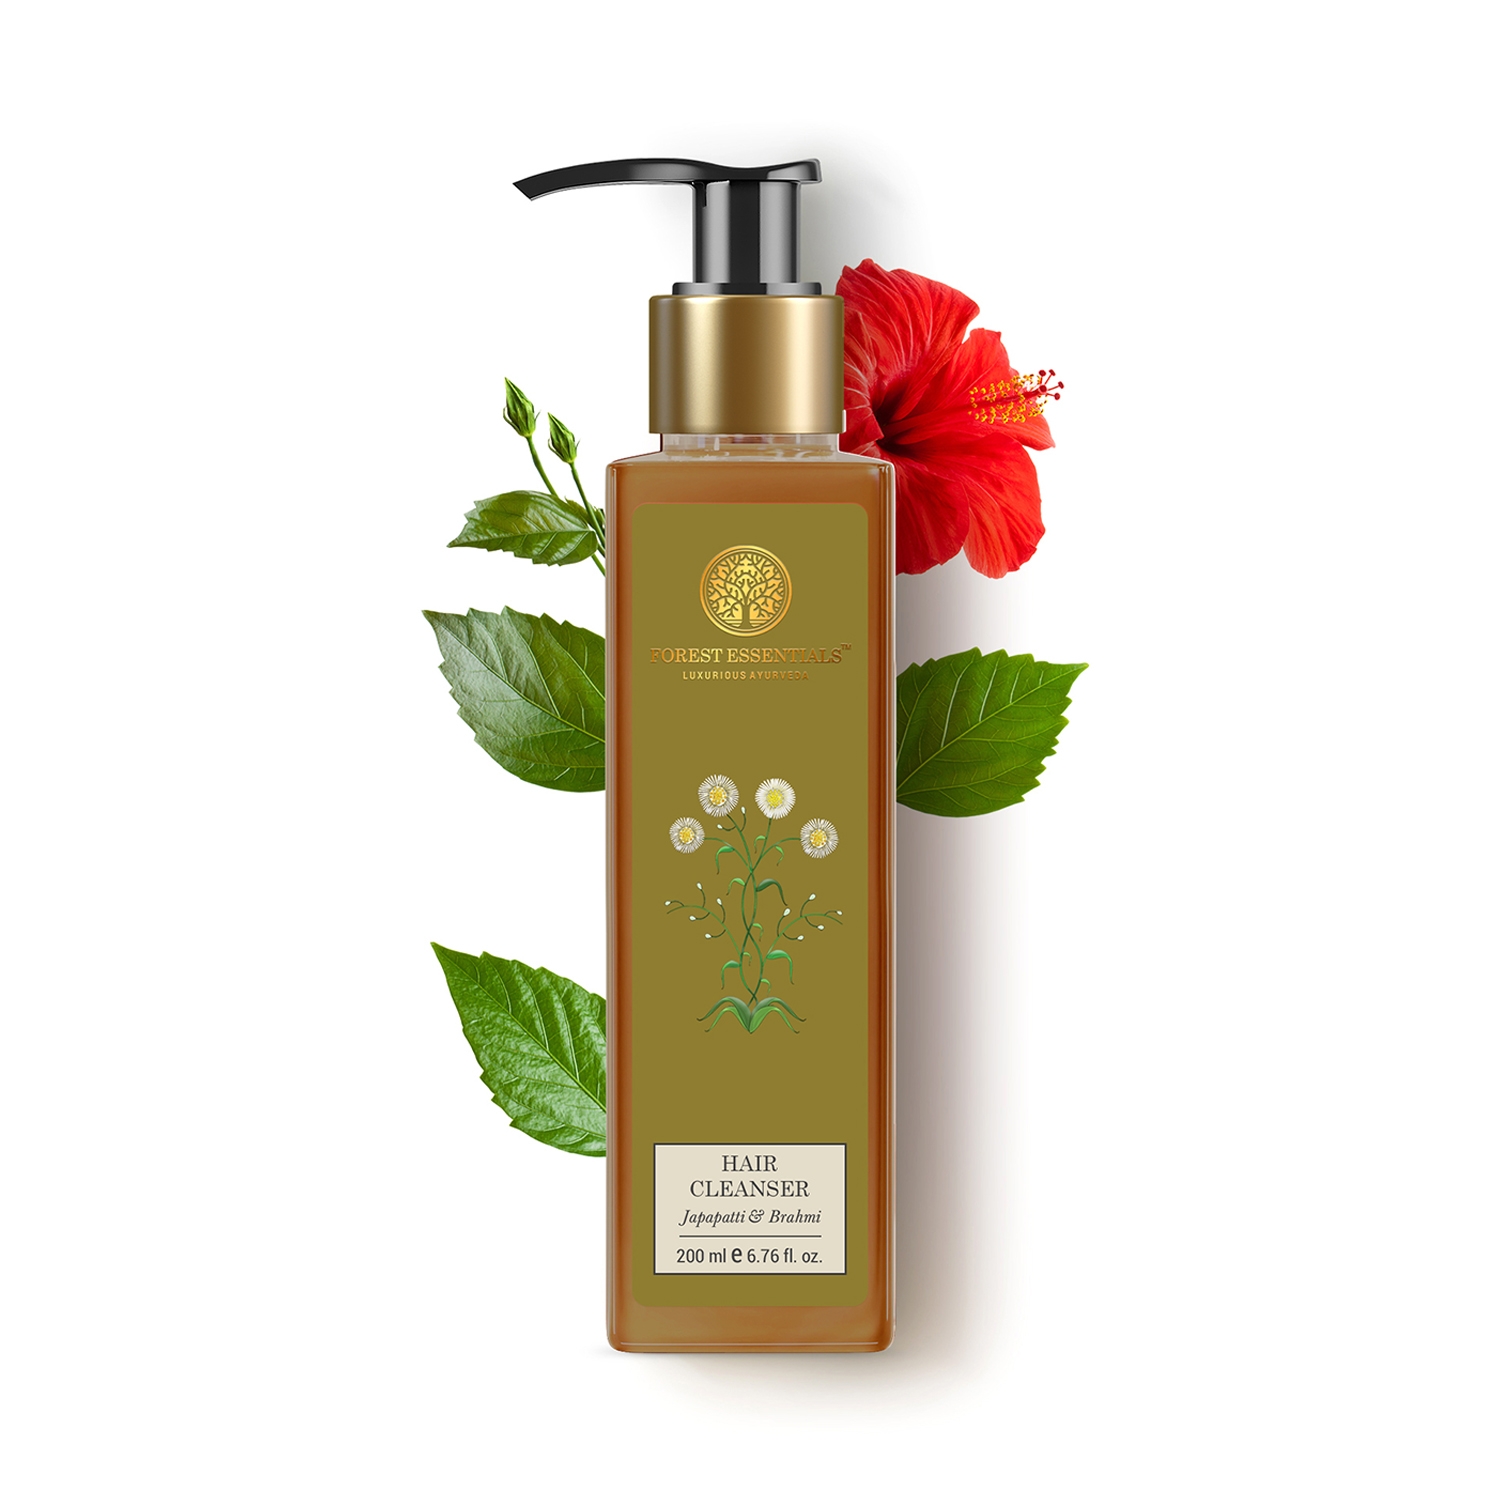 Forest Essentials | Forest Essentials Japapatti & Brahmi Hair Cleanser Shampoo (200ml)